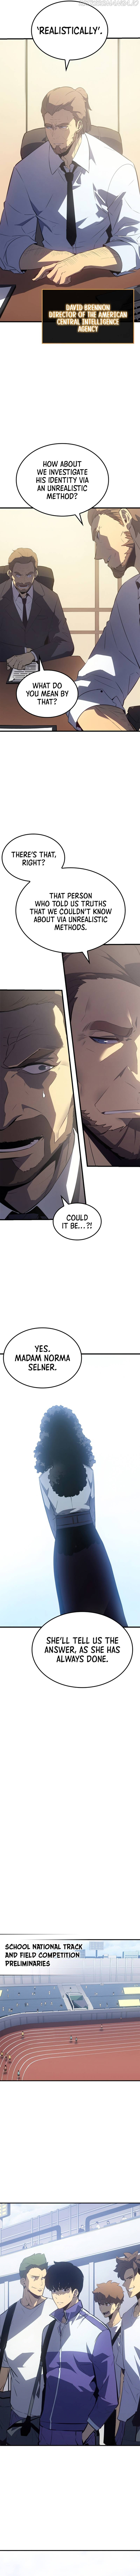 Solo Leveling Manga Manga Chapter - 184 - image 12